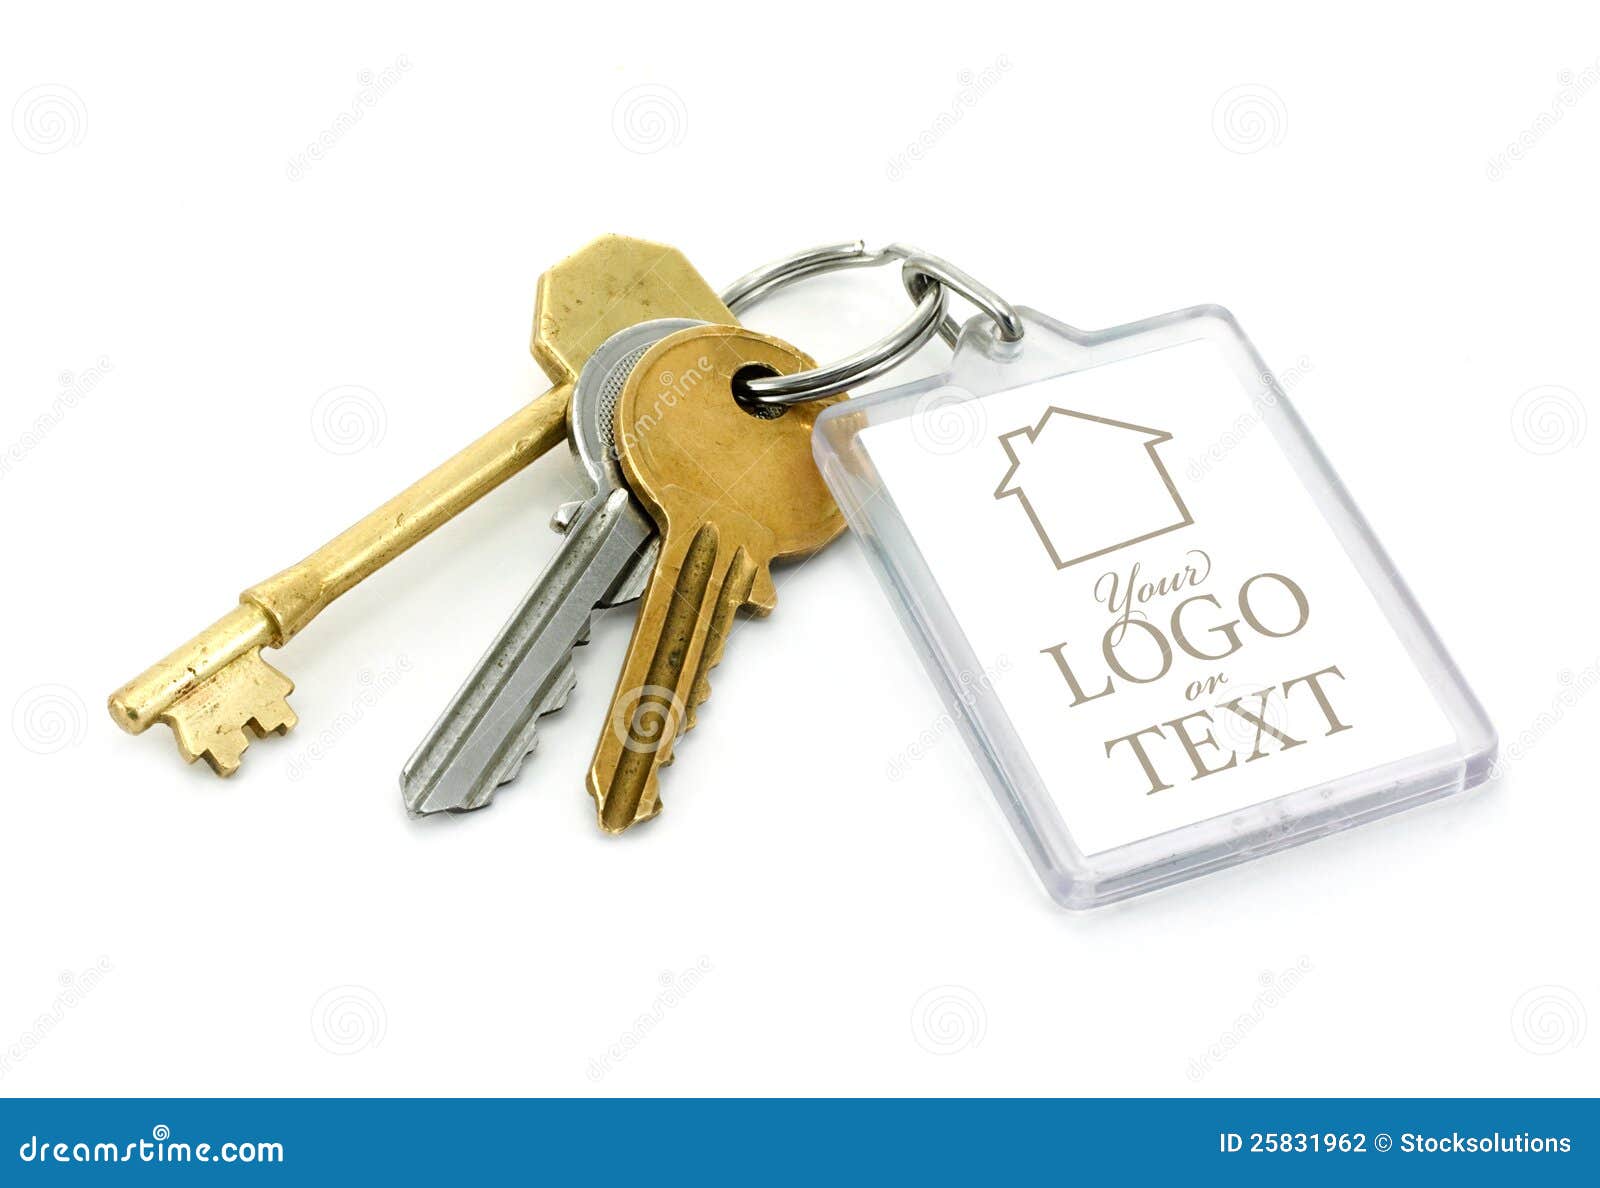 used house keys